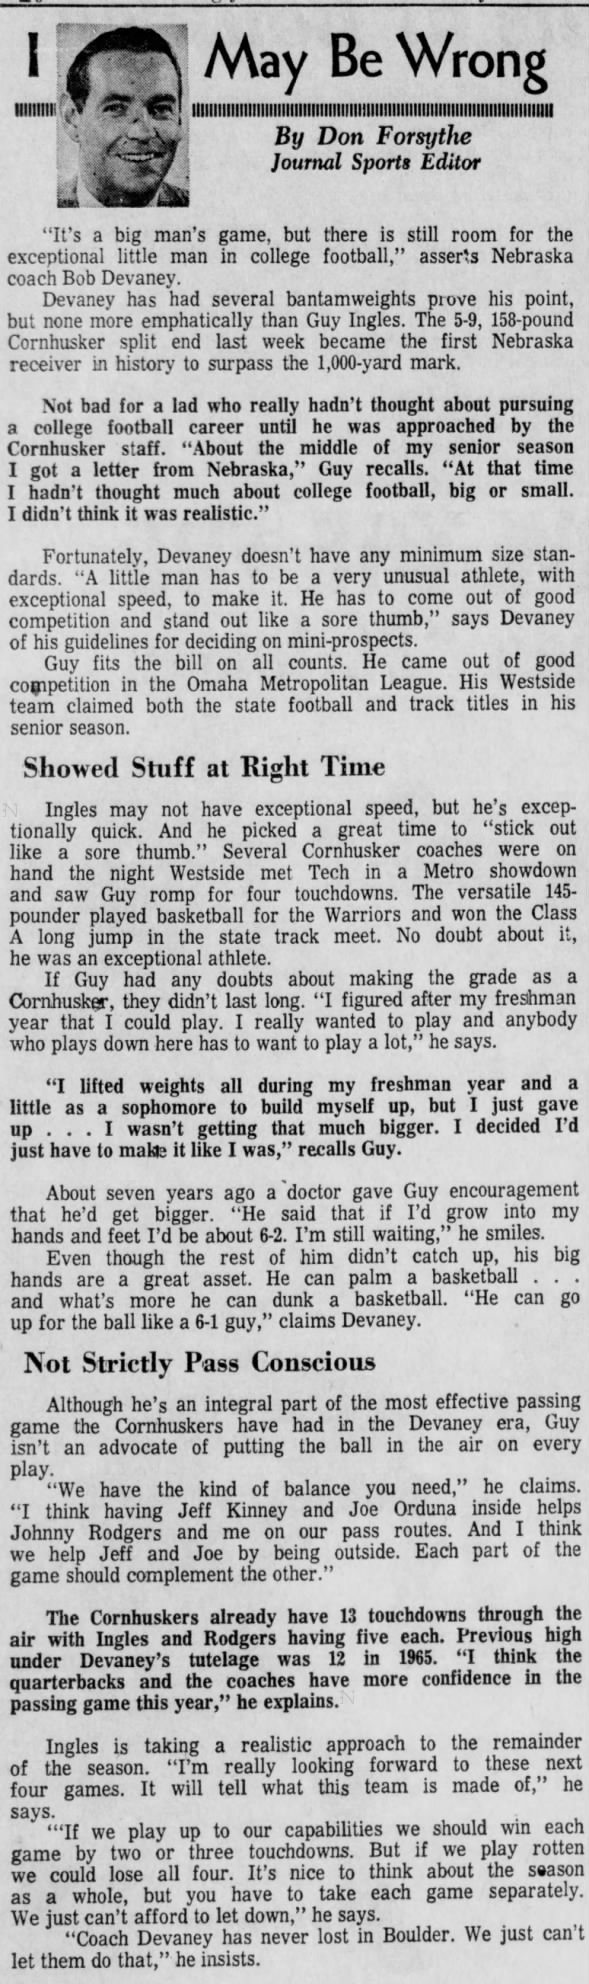 1970.10 Colorado week, Guy Ingles feature